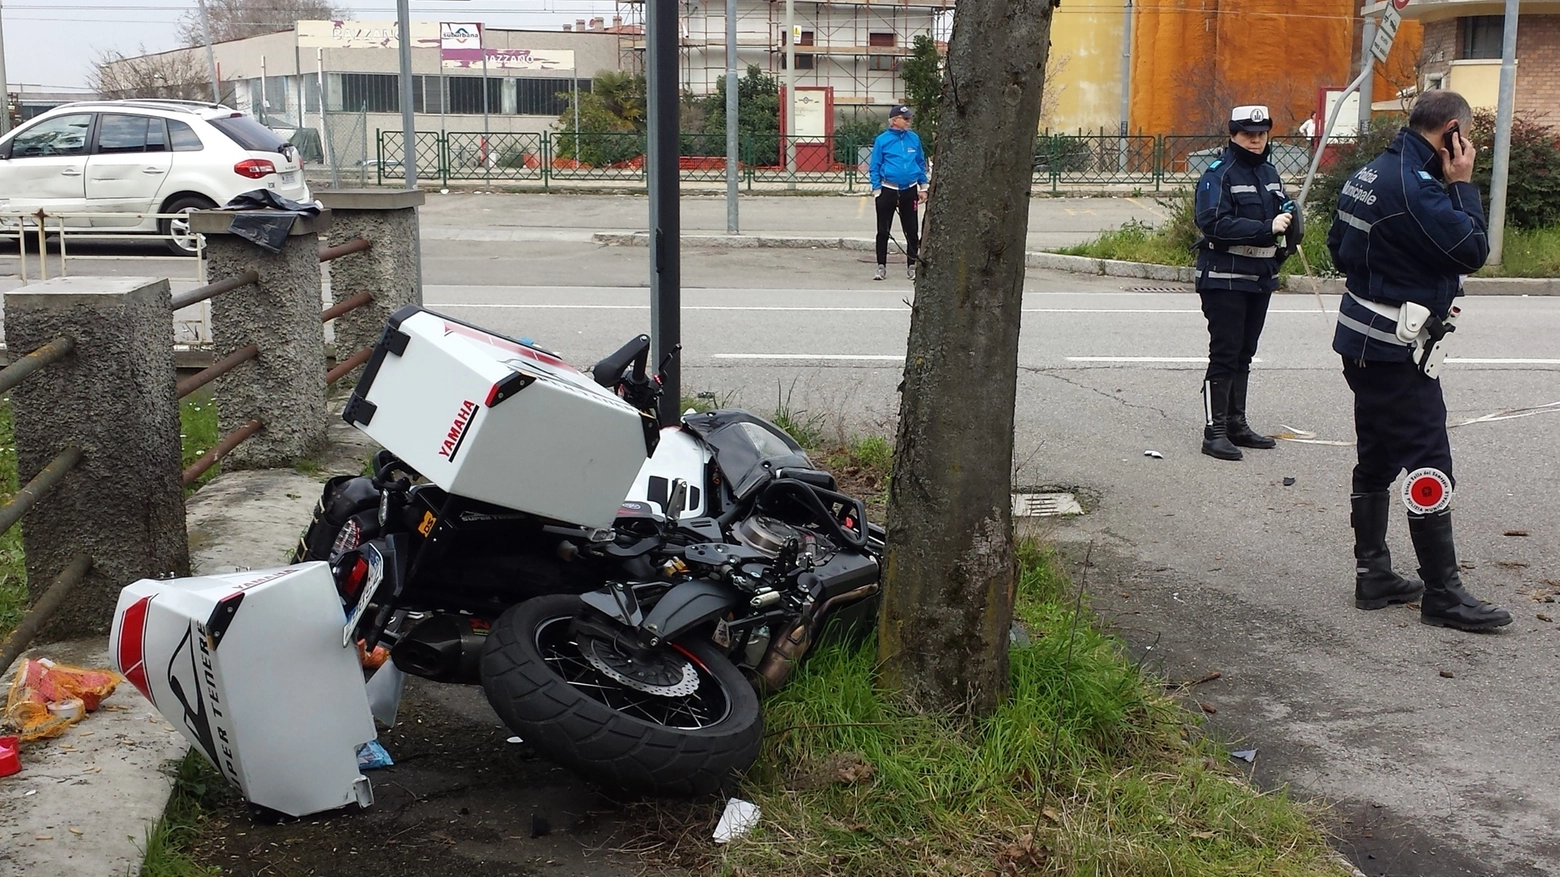 La moto subito dopo l'incidente mortale a Bazzano (foto Mignardi)